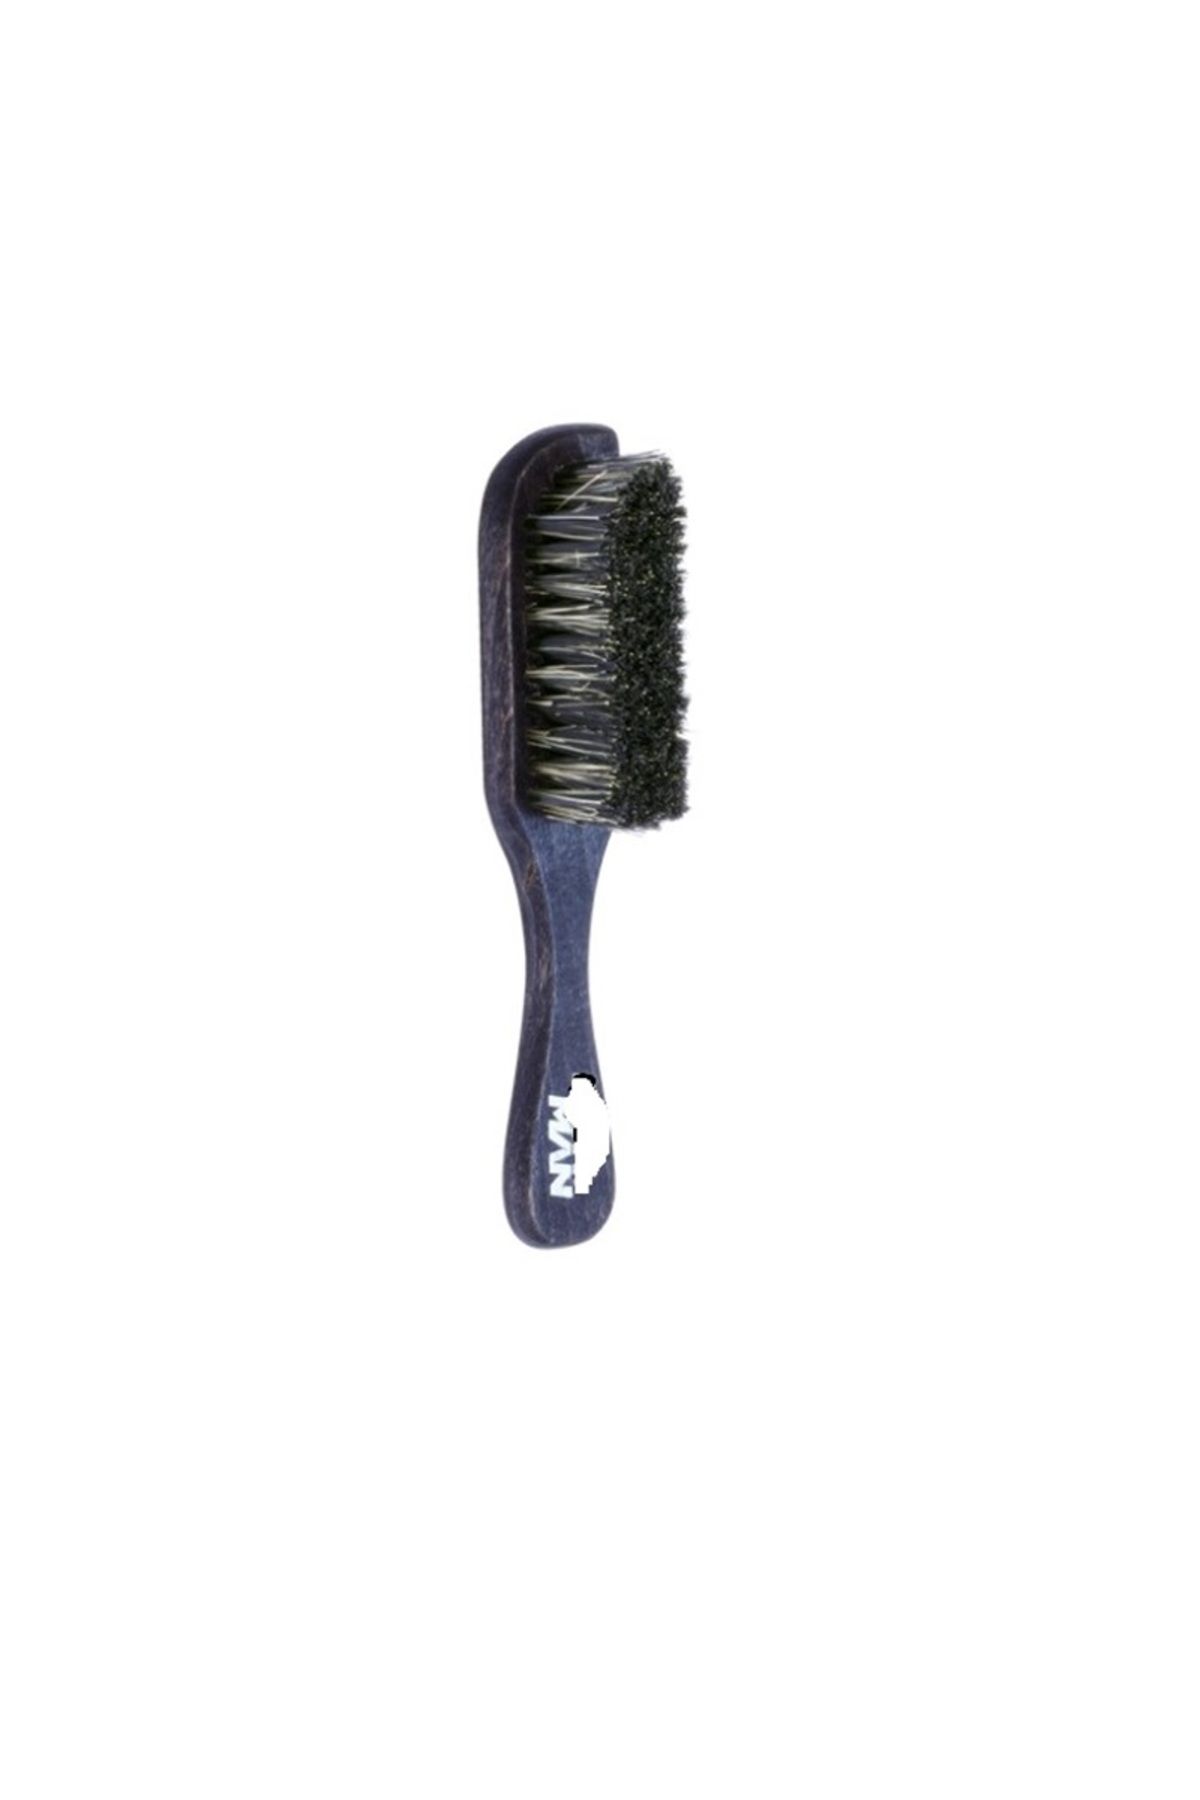 Nano Absolute fade fırça sıfırlama fırçası ense sakal temizleme fırçası sıfır kesim fırçası s